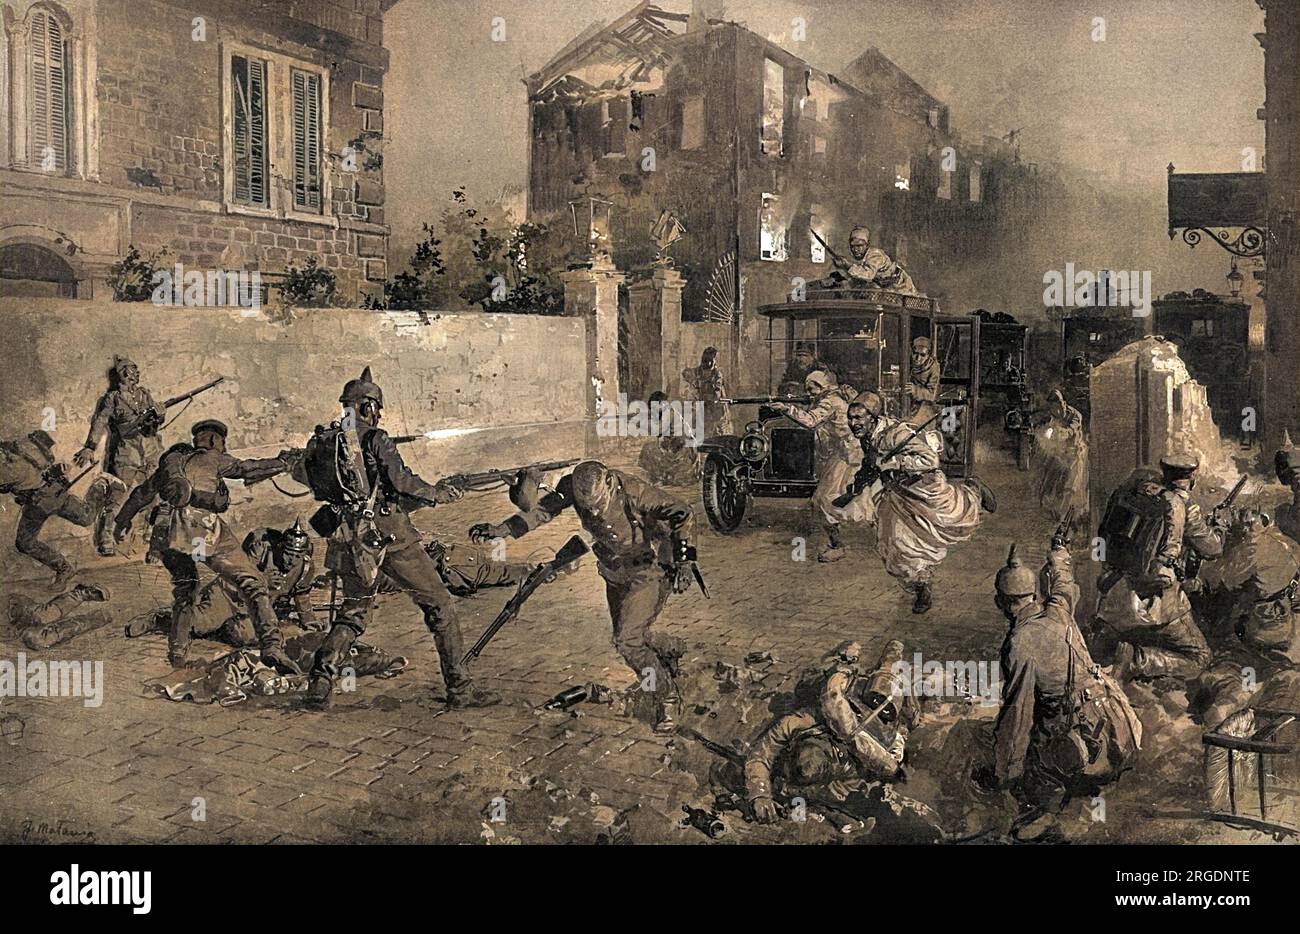 Il taxi in guerra. Gli occupanti tedeschi della città di Senlis, in Francia, nella prima guerra mondiale, sorpresi da un pizzico di Turcos (nativi francesi truppe coloniali algerine) che si sono avventurati nella città in taxi. Foto Stock